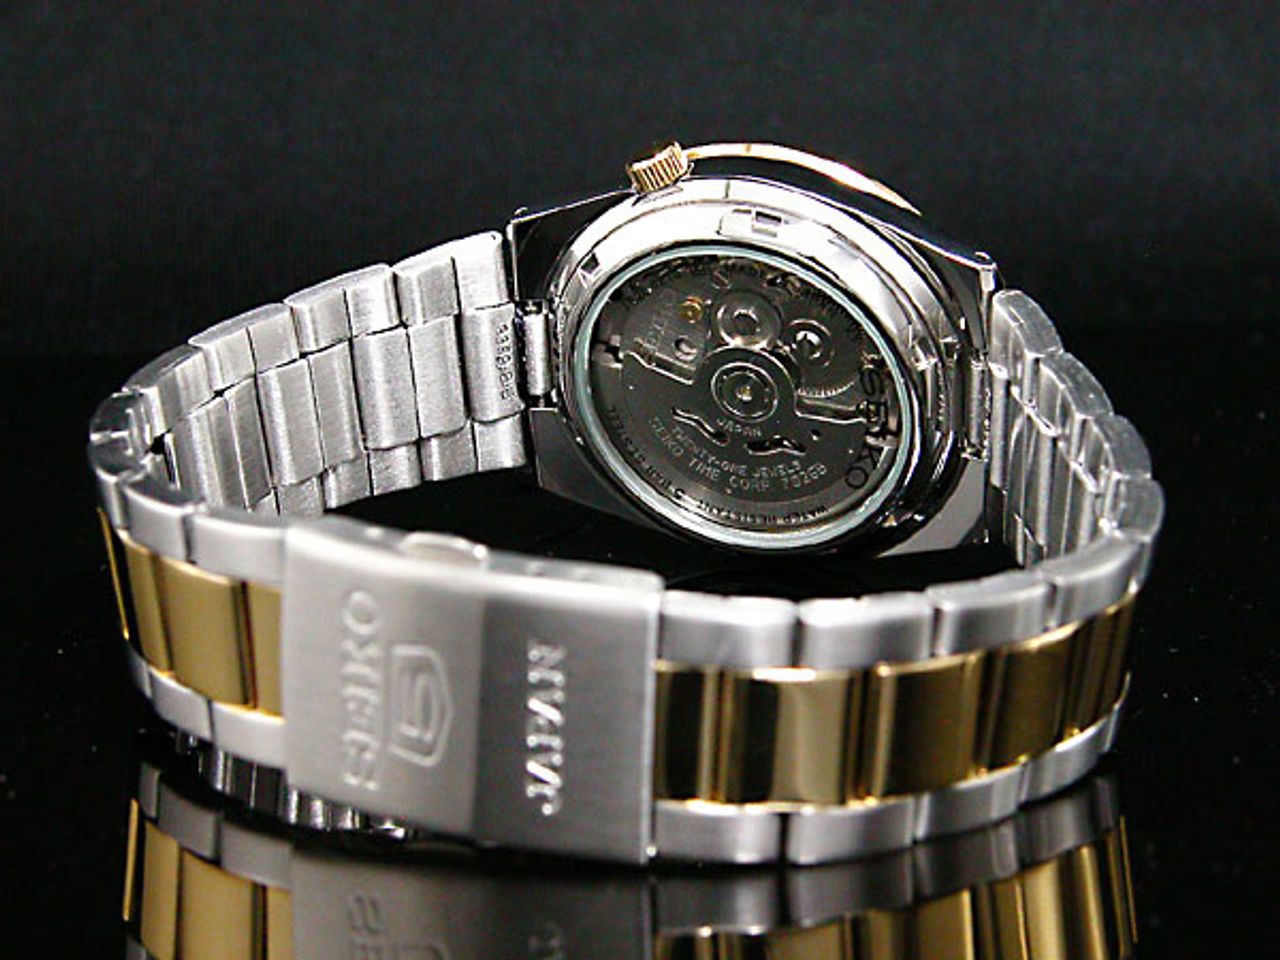 Chiếc đồng hồ Seiko nam SNKE04J1 được thiết kế lộ máy sau độc đáo